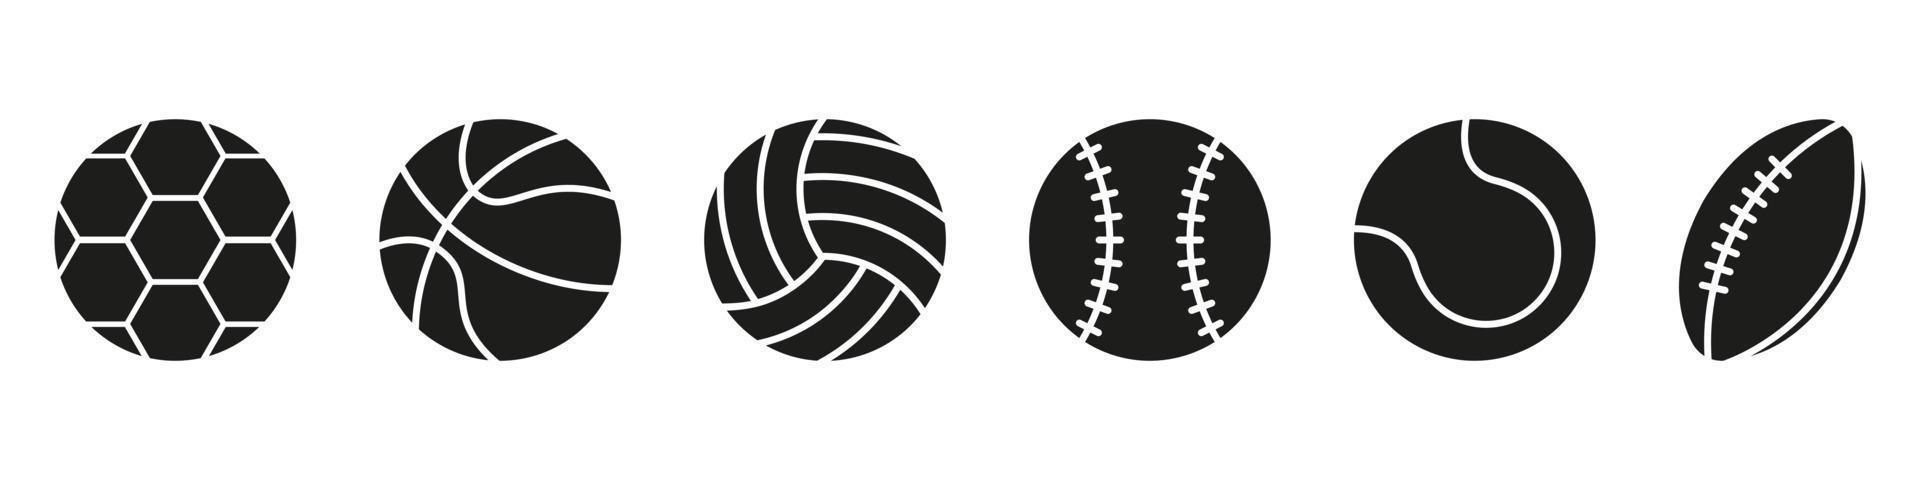 conjunto de icono de silueta de bolas de juego deportivo. colección de pelotas para baloncesto, béisbol, tenis, rugby, fútbol, pictograma negro de voleibol. ilustración vectorial aislada. vector